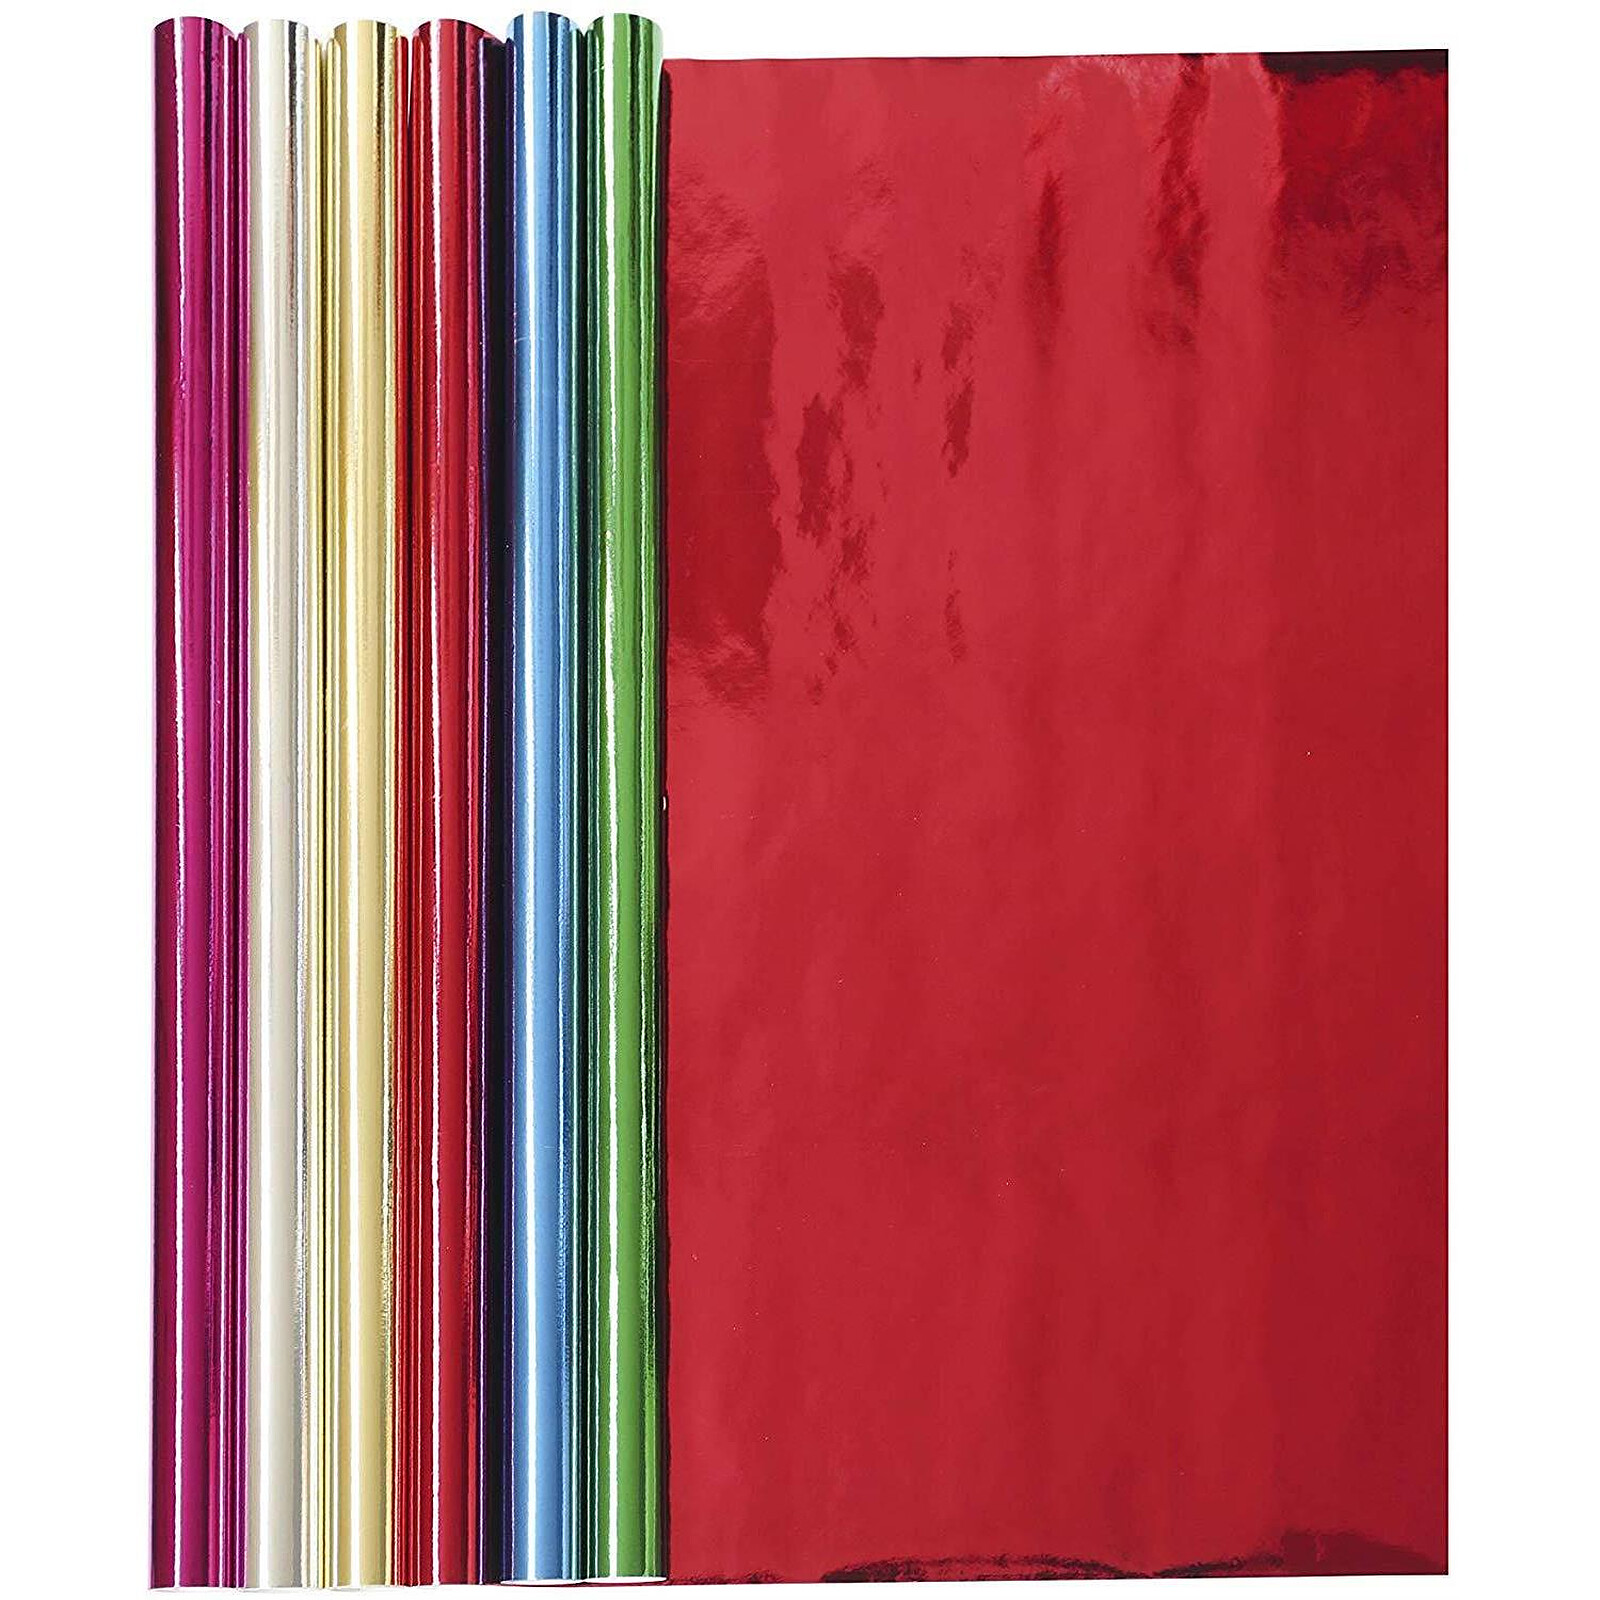 CLAIREFONTAINE Rouleau papier cadeau Excellia 80g. Dimensions 2x0,70m.  Motif Travel - Papier Cadeaufavorable à acheter dans notre magasin